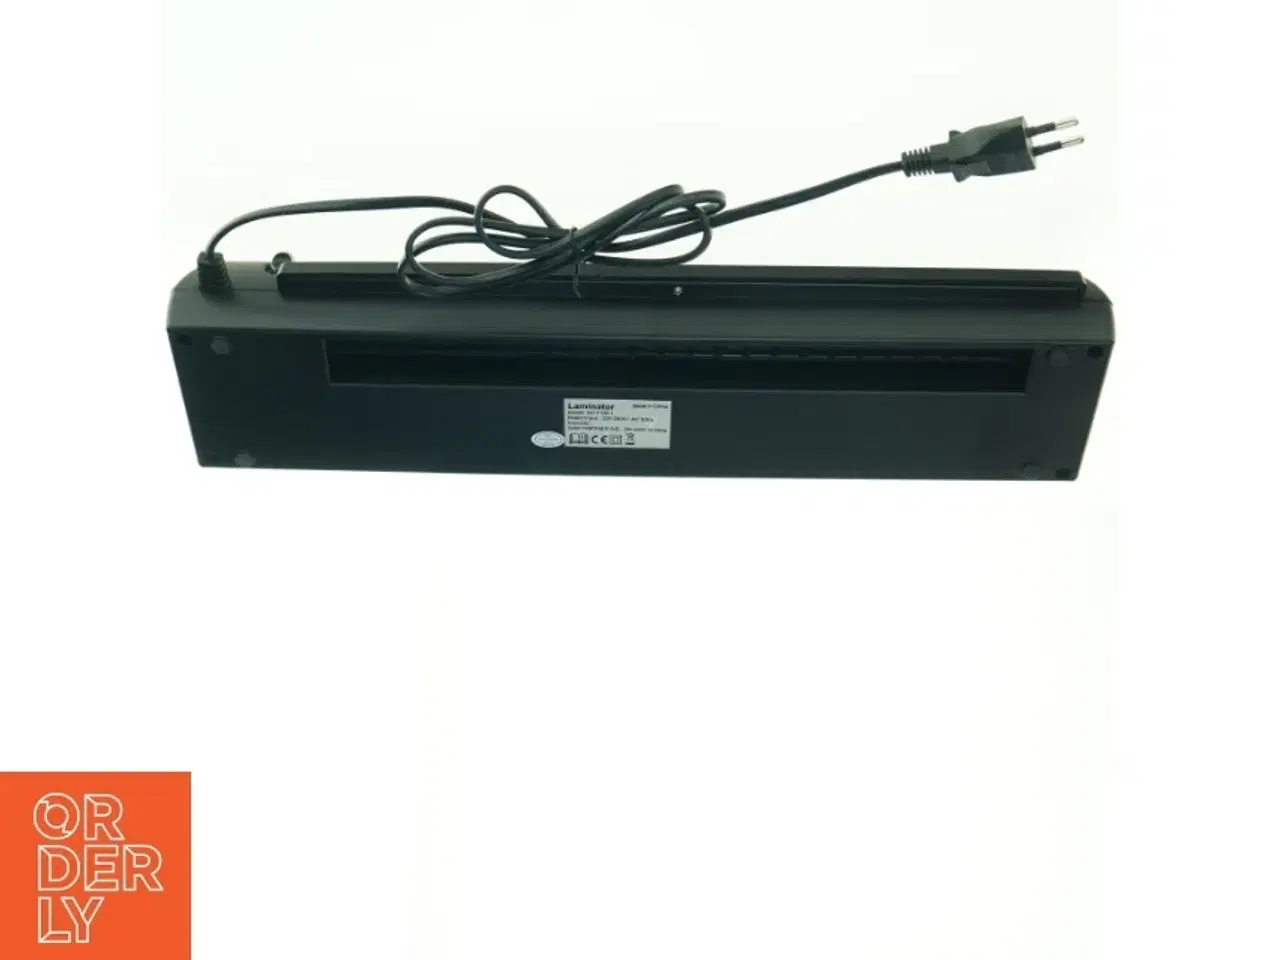 Billede 2 - A3 Kontor laminator (str. 40 x 10 cm) - kun testet - ellers ny.